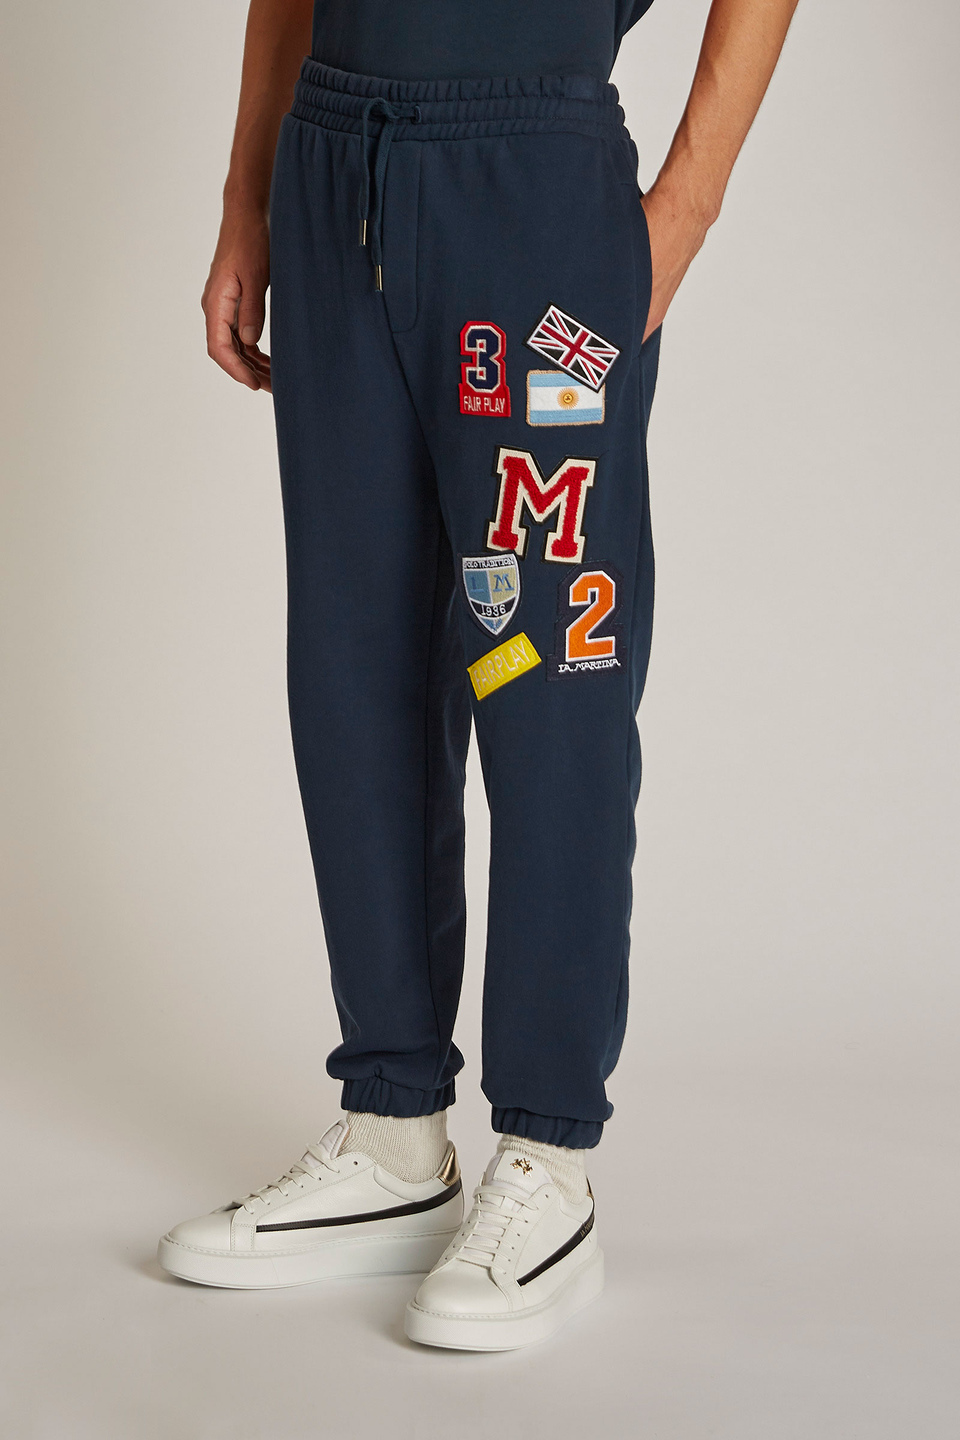 Pantalone da uomo modello jogger in cotone elasticizzato regular fit - La Martina - Official Online Shop